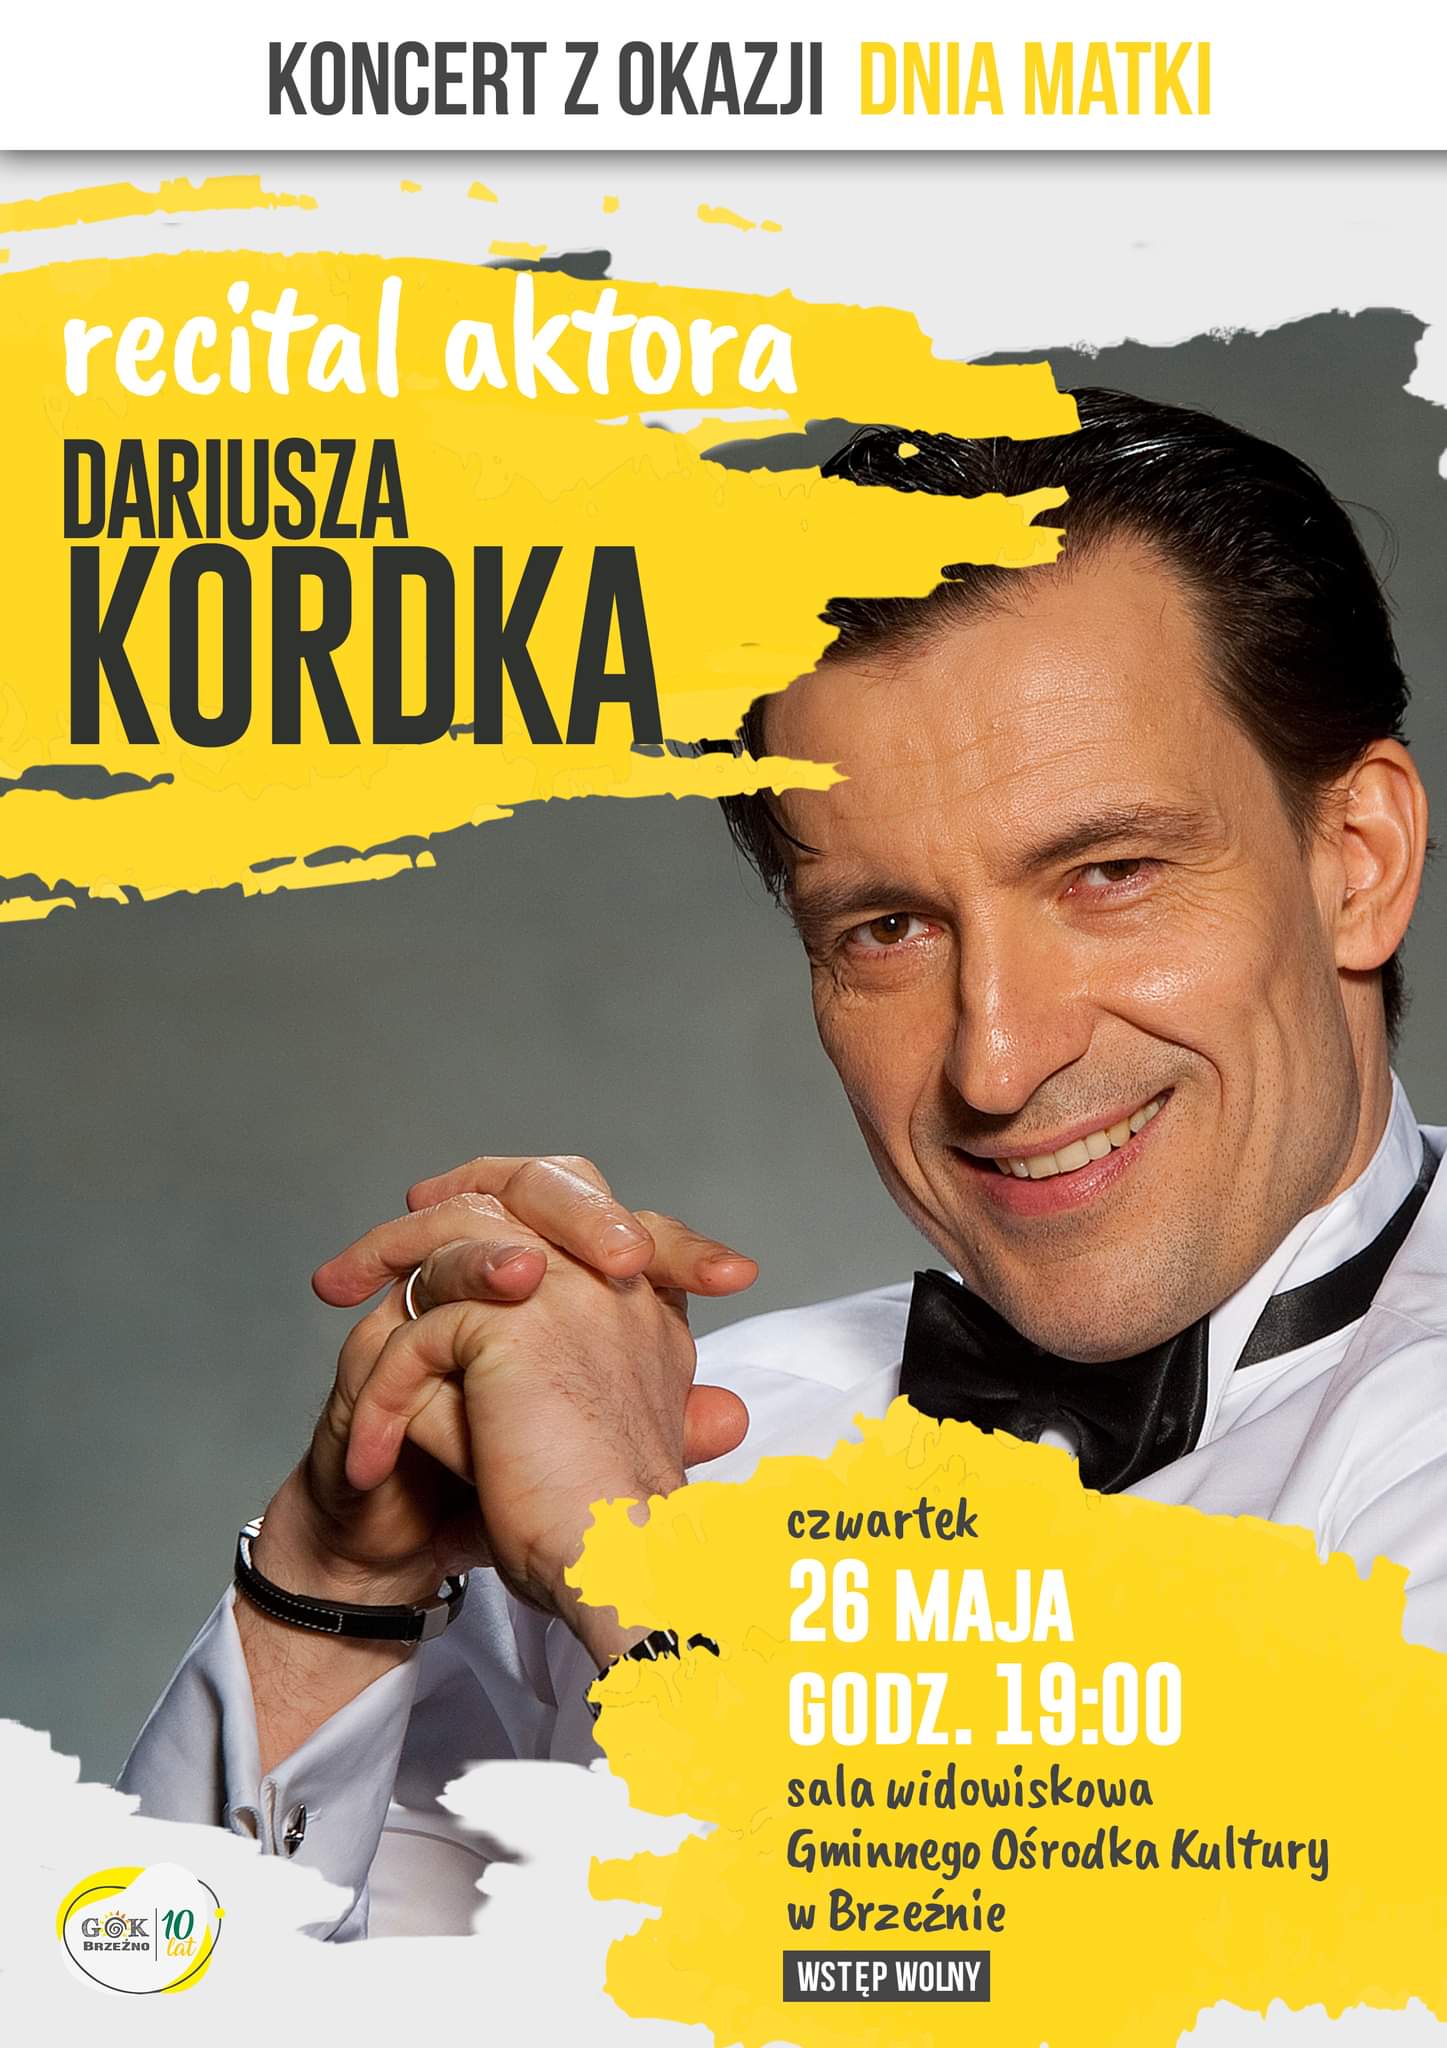 Plakat reklamujący recital Dariusza Kordka w Brzeźnie